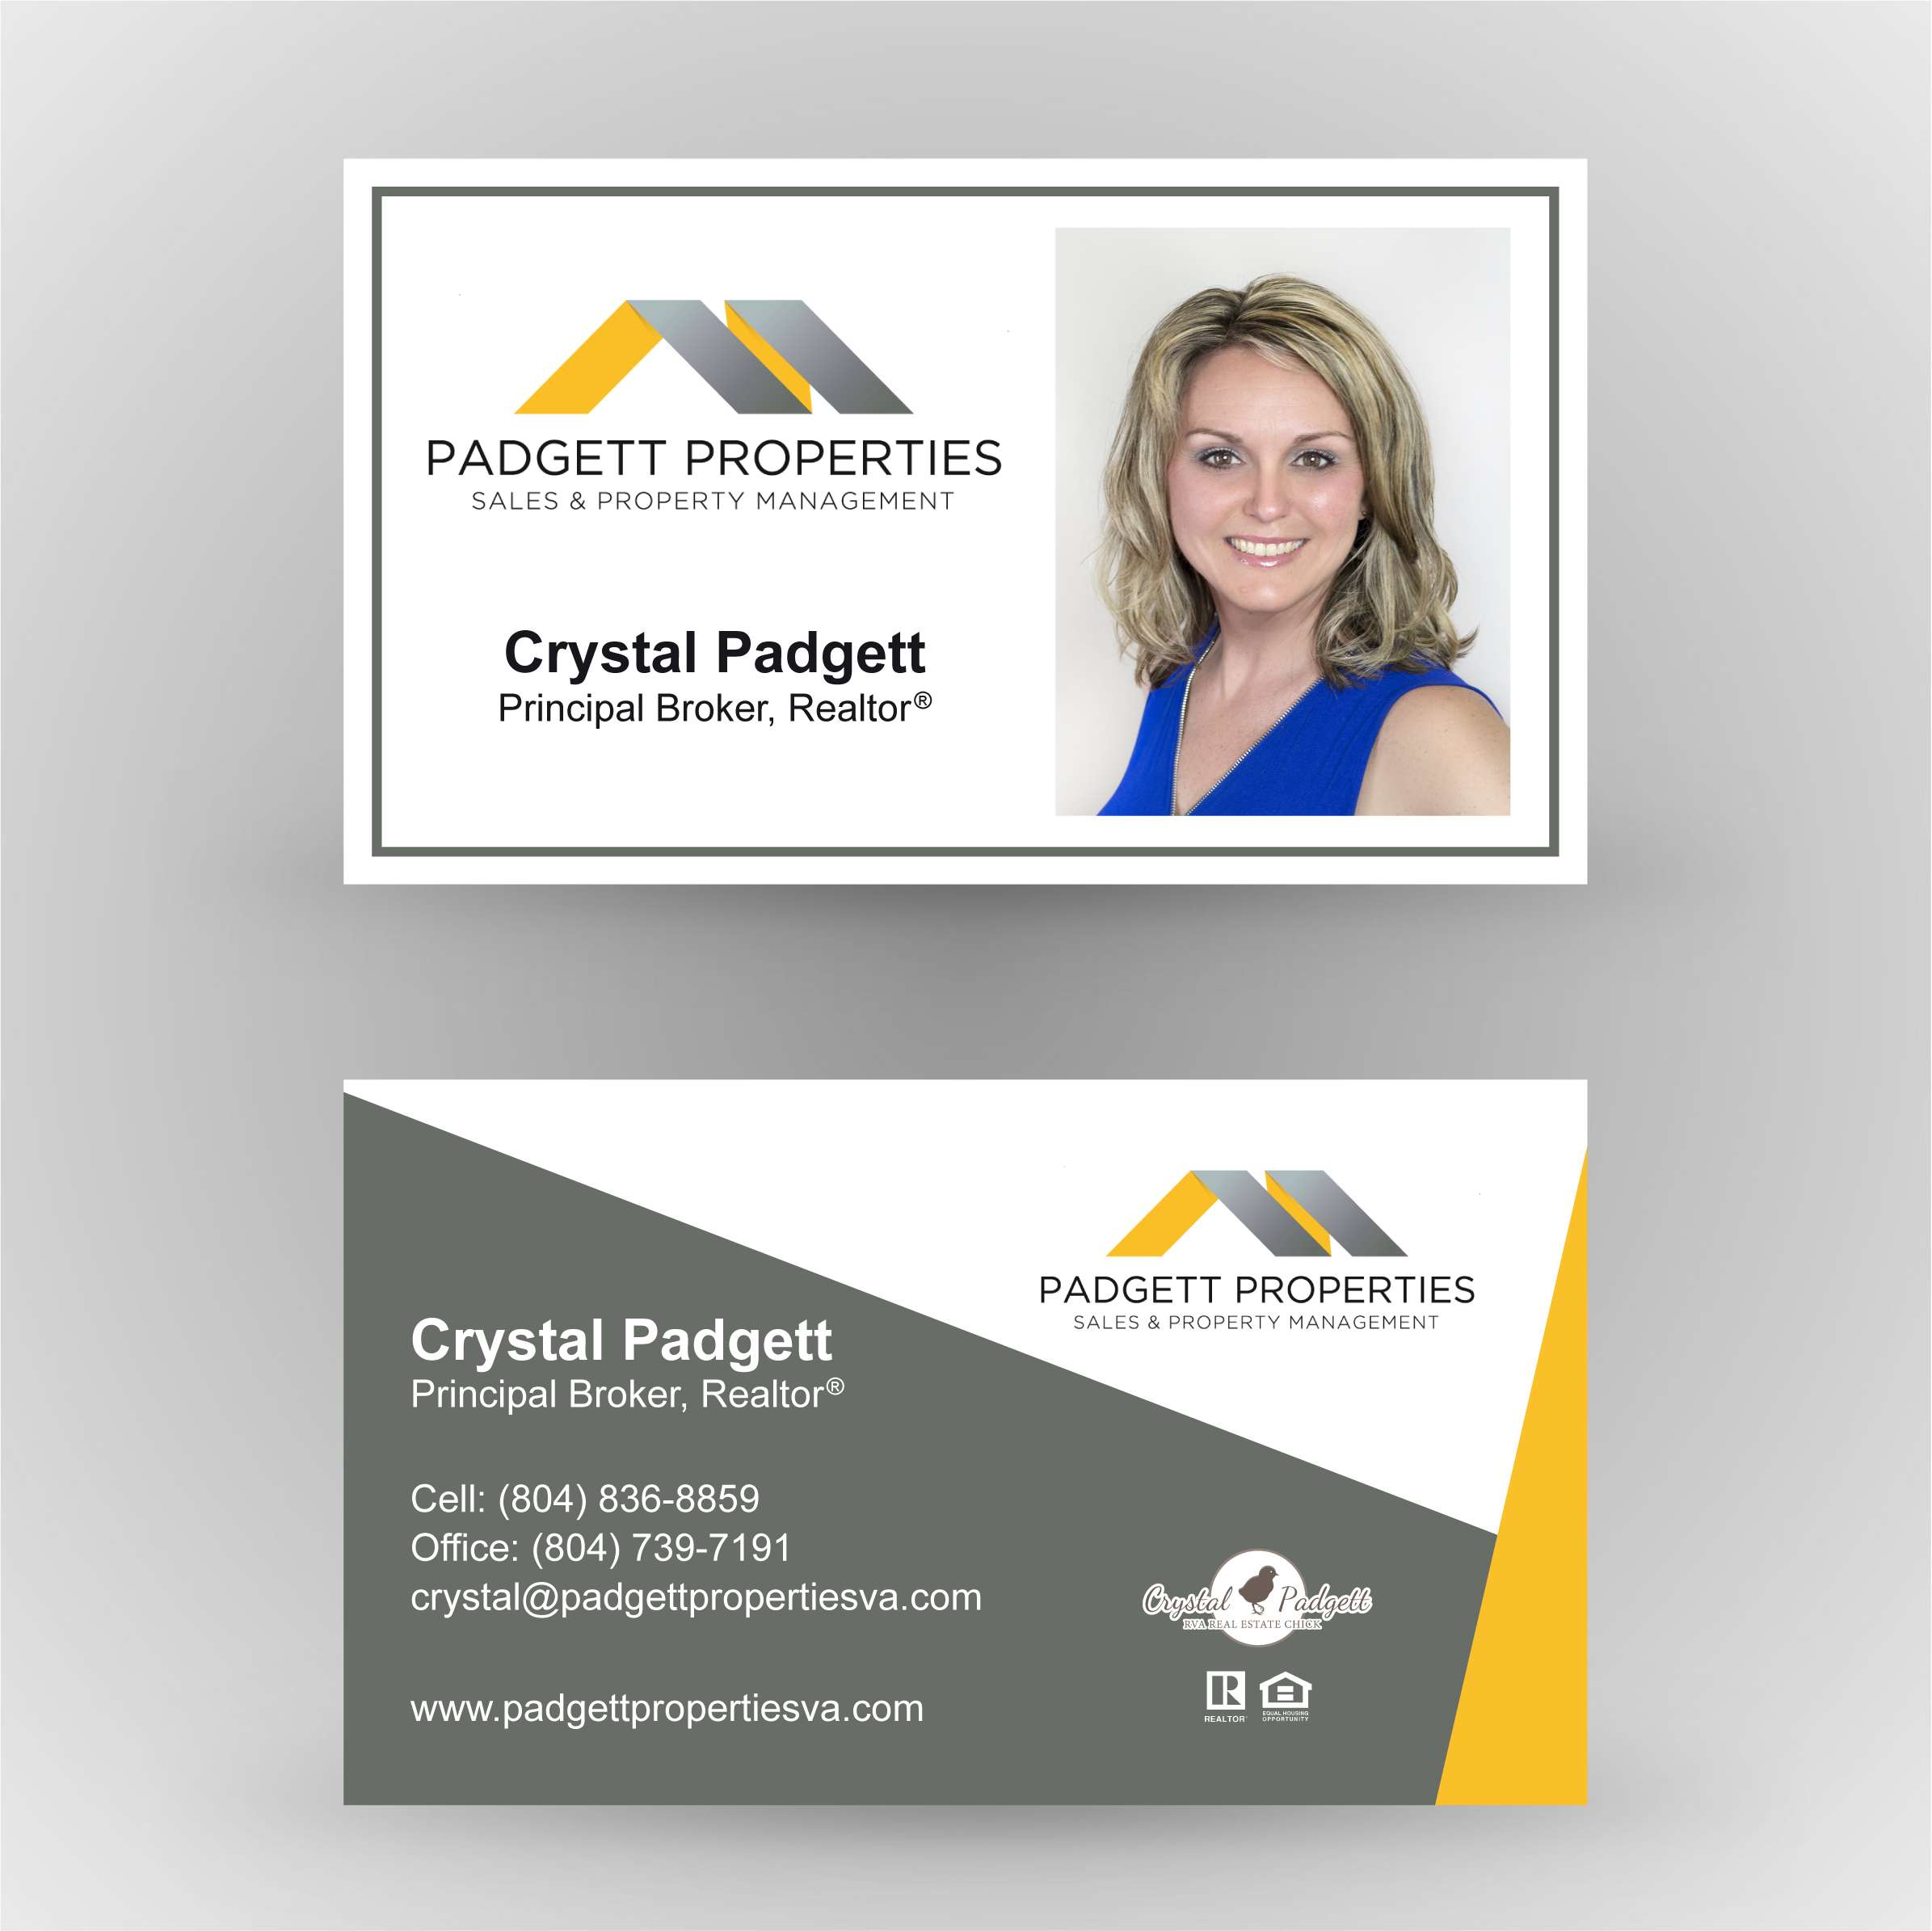 Padgett Properties - Business Cards